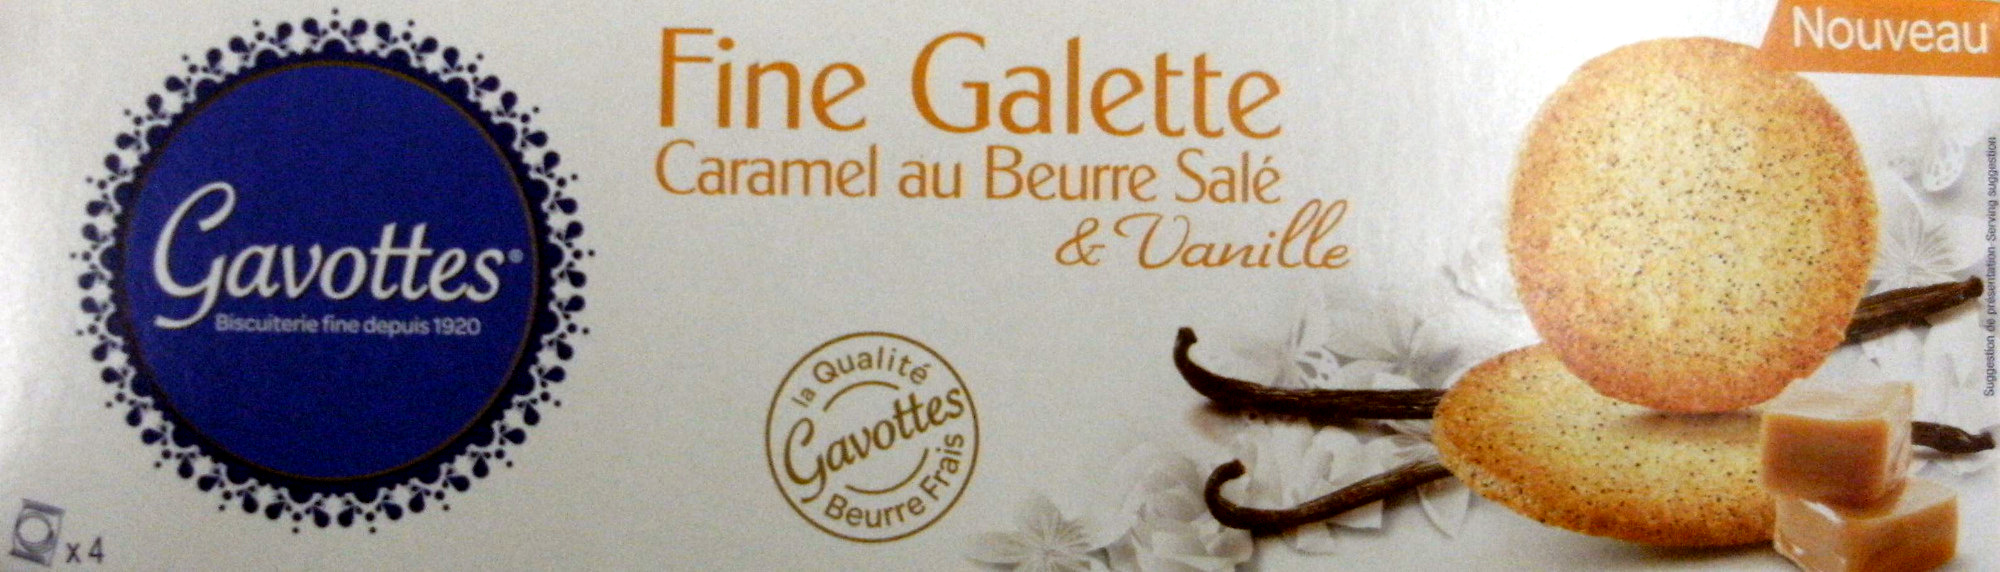 Gavottes fine galette caramel au beurre salé & vanille - Produkt - fr